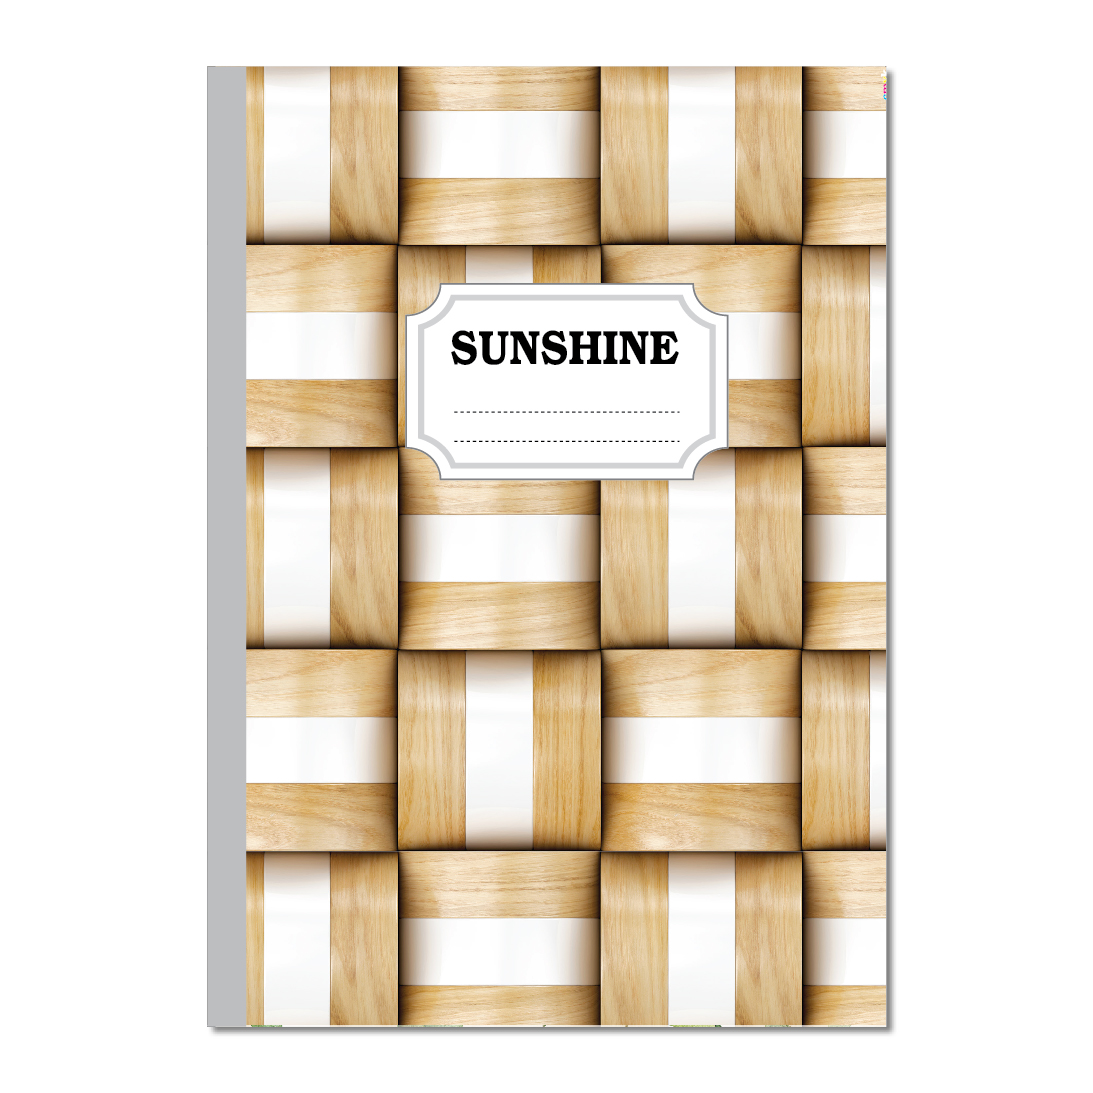 HẢI TIẾN Sổ may gáy A4  - Sunshine (200 trang - Lốc 5 quyển, 300 trang - Lốc 3 quyển, 400 trang - Lốc 1 quyển)